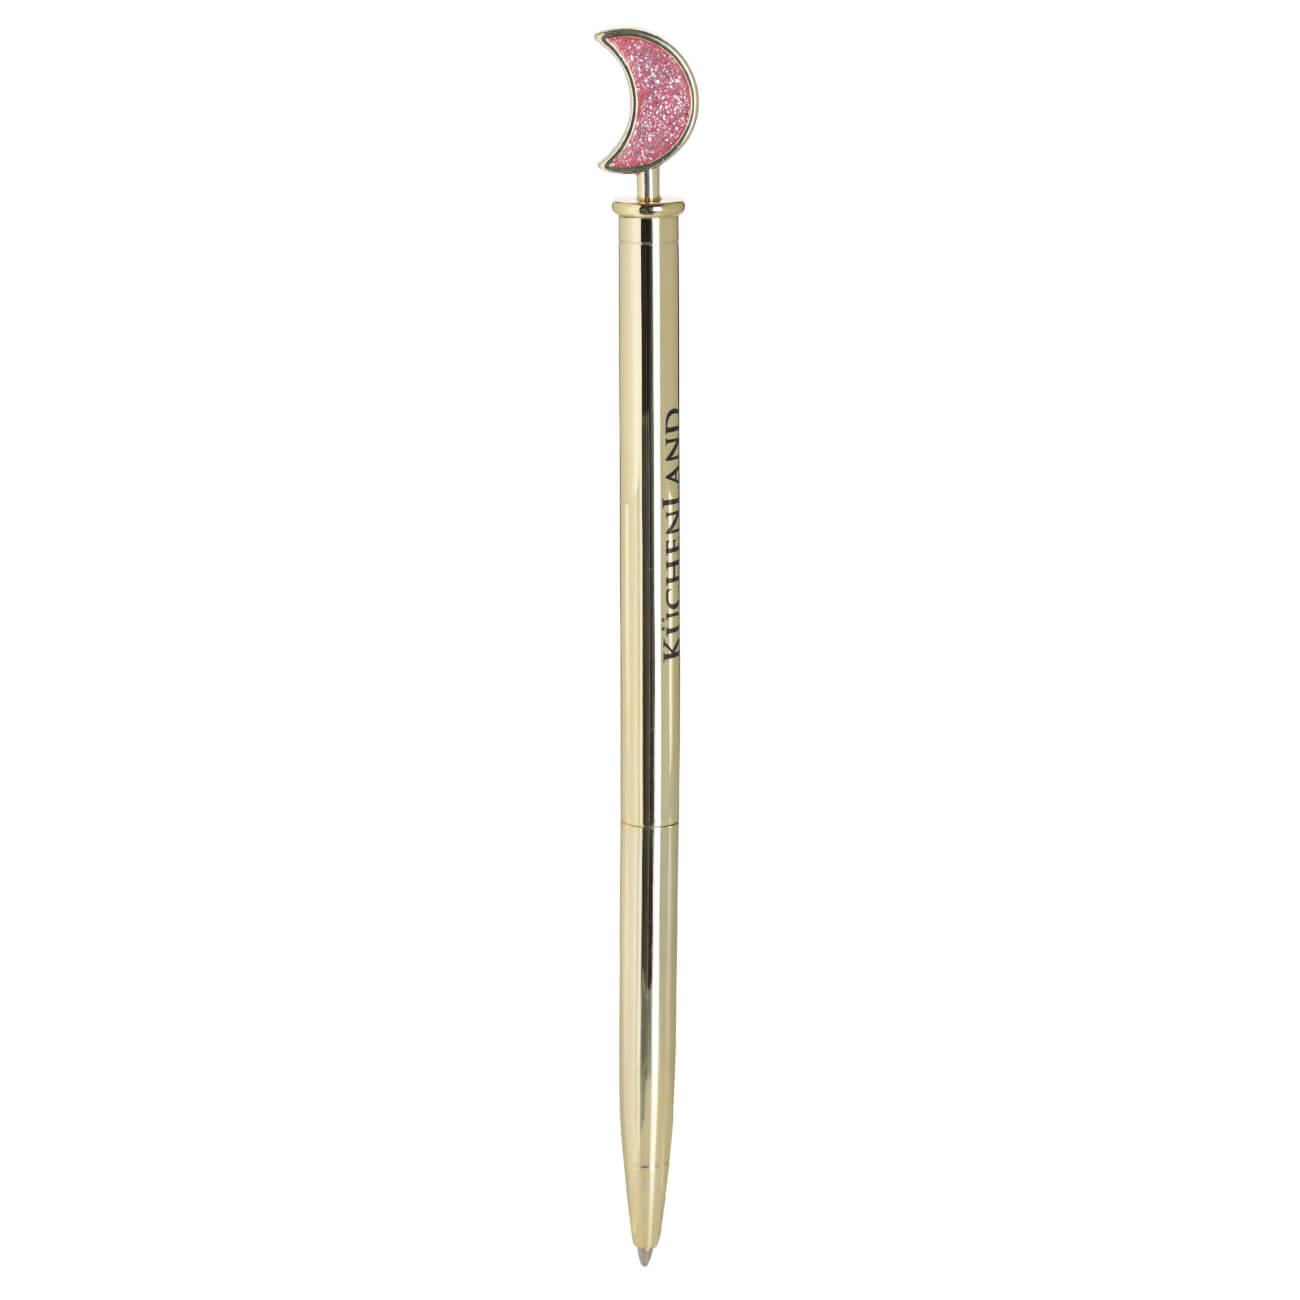 Ручка шариковая, 15 см, с фигуркой, металл, золотистая, Луна, Draw figure изображение № 1